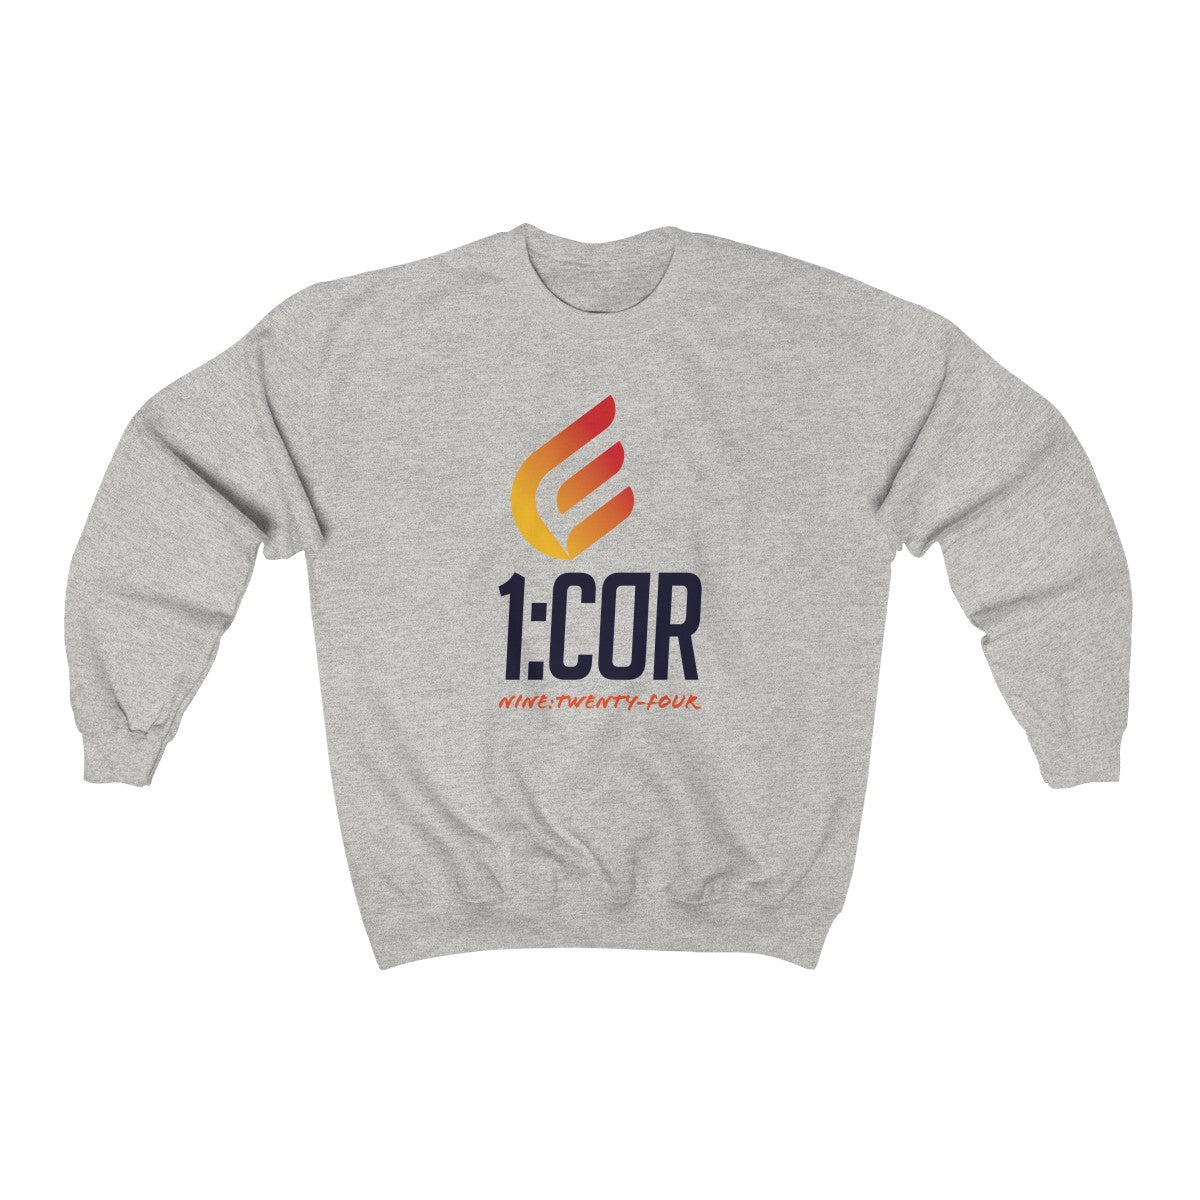 1:Cor | Crewneck Sweatshirt